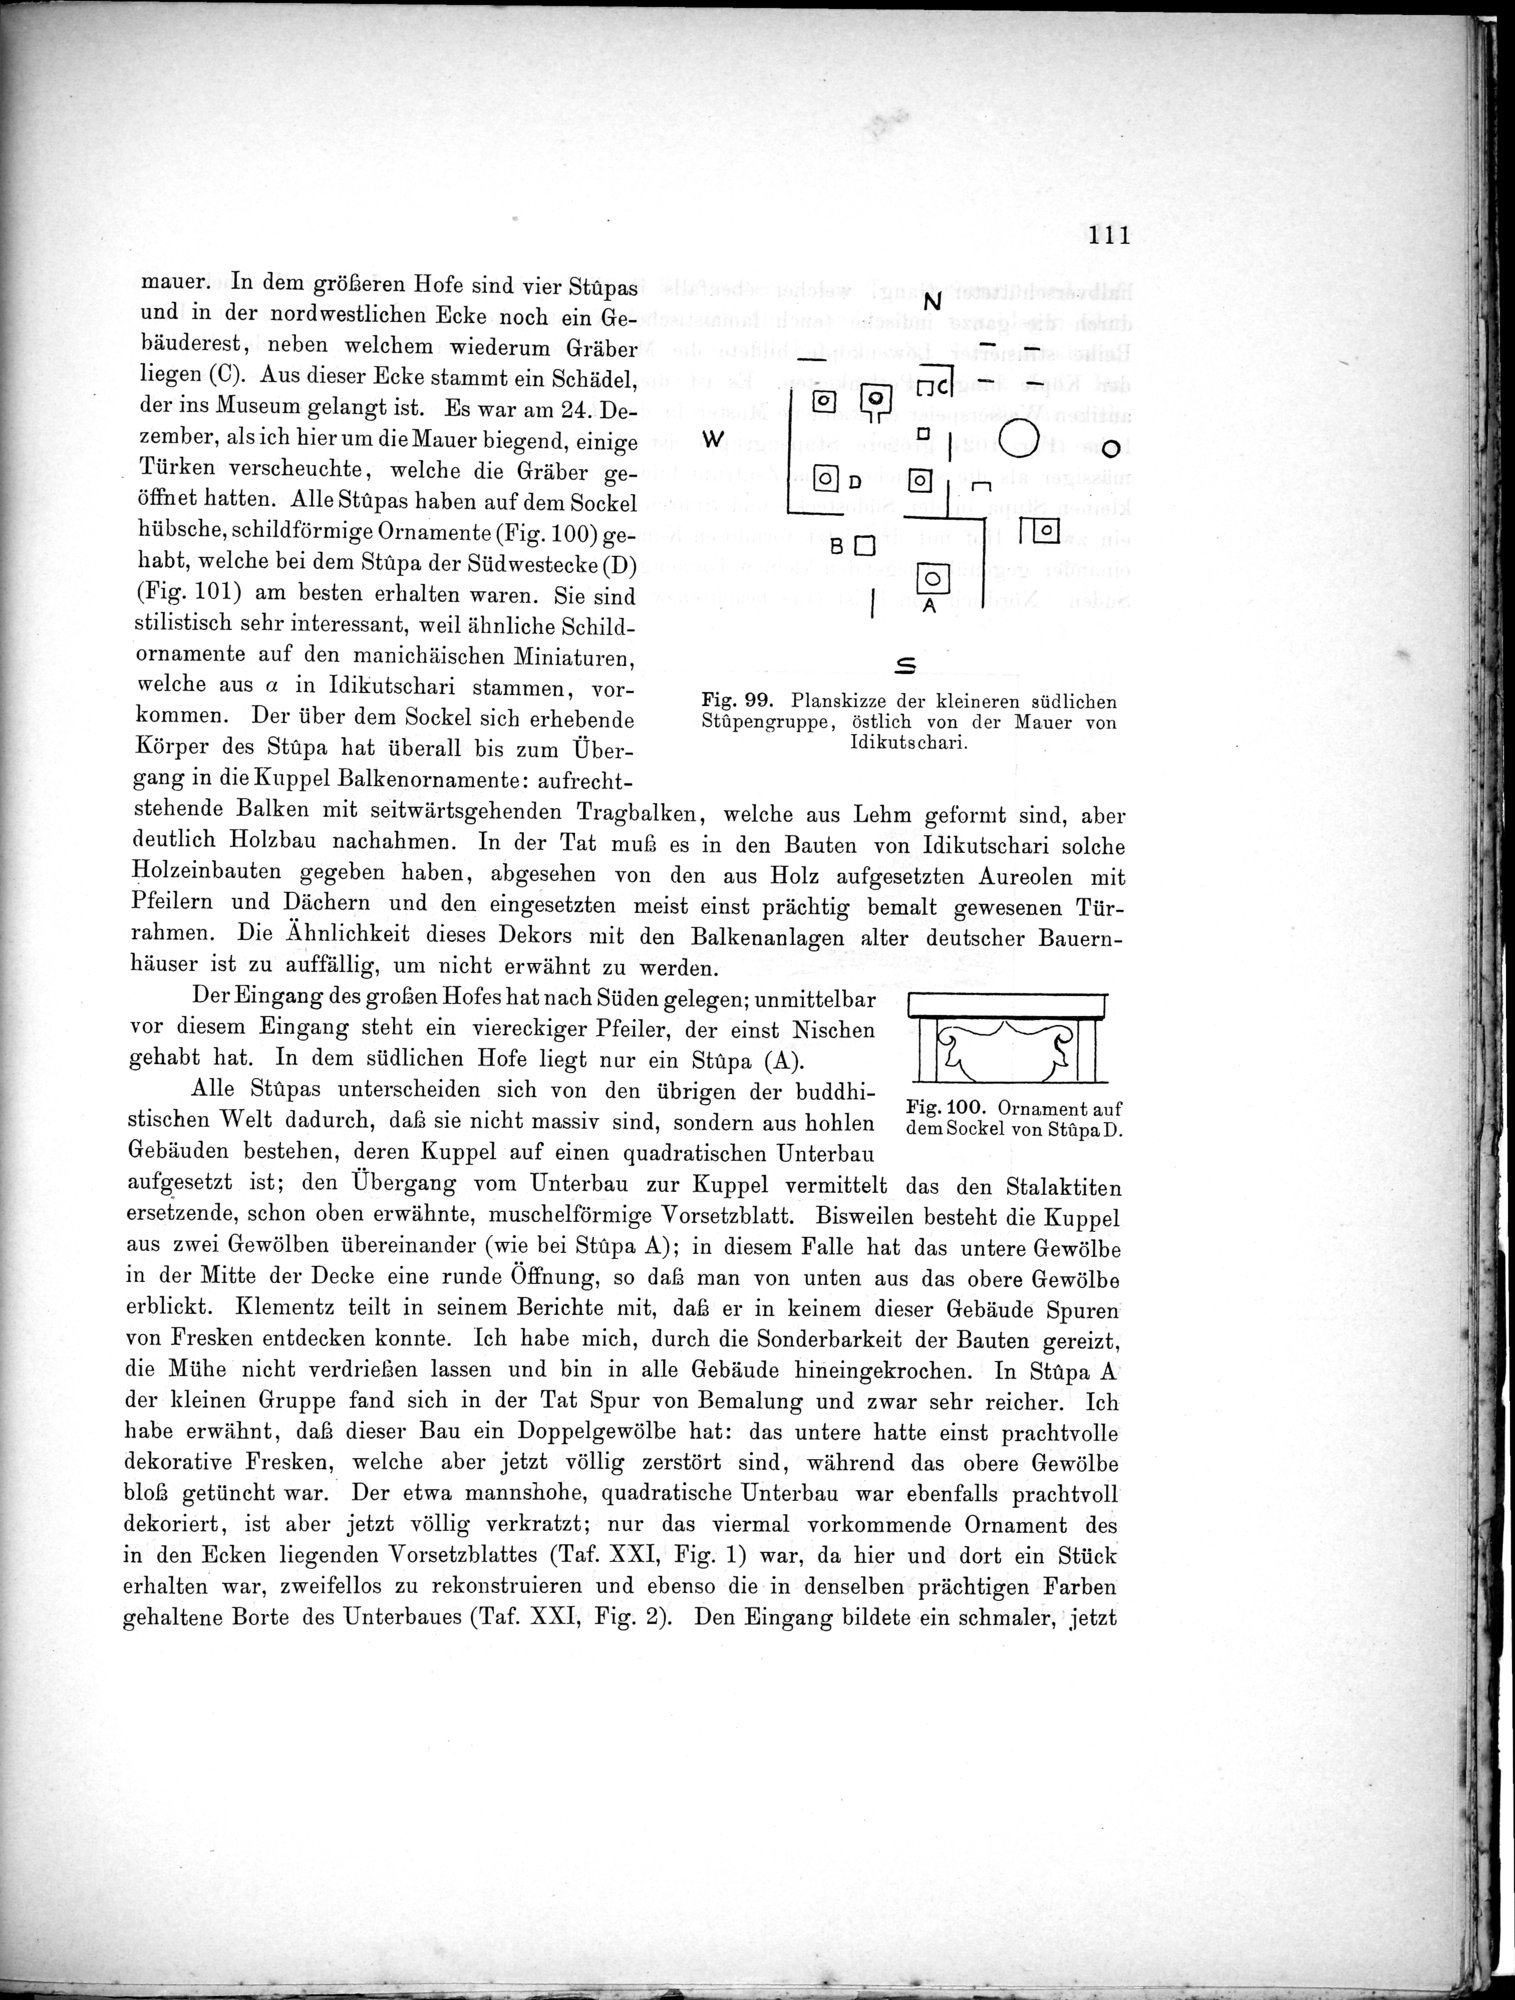 Bericht über archäologische Arbeiten in Idikutschari und Umgebung im Winter 1902-1903 : vol.1 / Page 121 (Grayscale High Resolution Image)